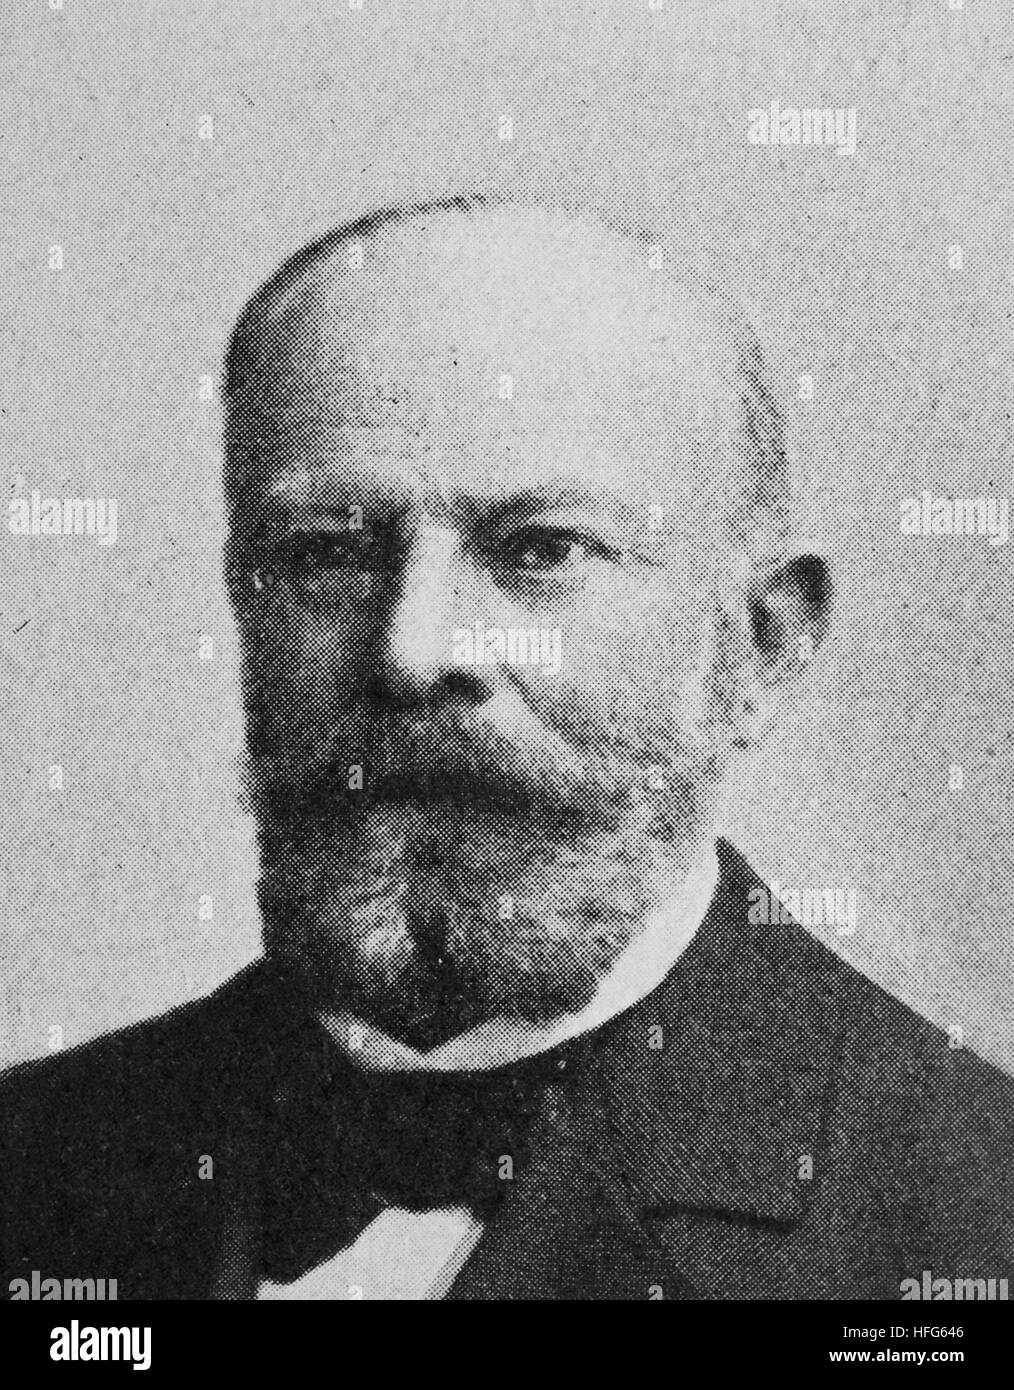 Dagobert von Gerhardt Gerhard von Amyntor, 1831 - 1910, était un soldat allemand, poète et romancier,., la reproduction photo de l'année 1895, l'amélioration numérique Banque D'Images